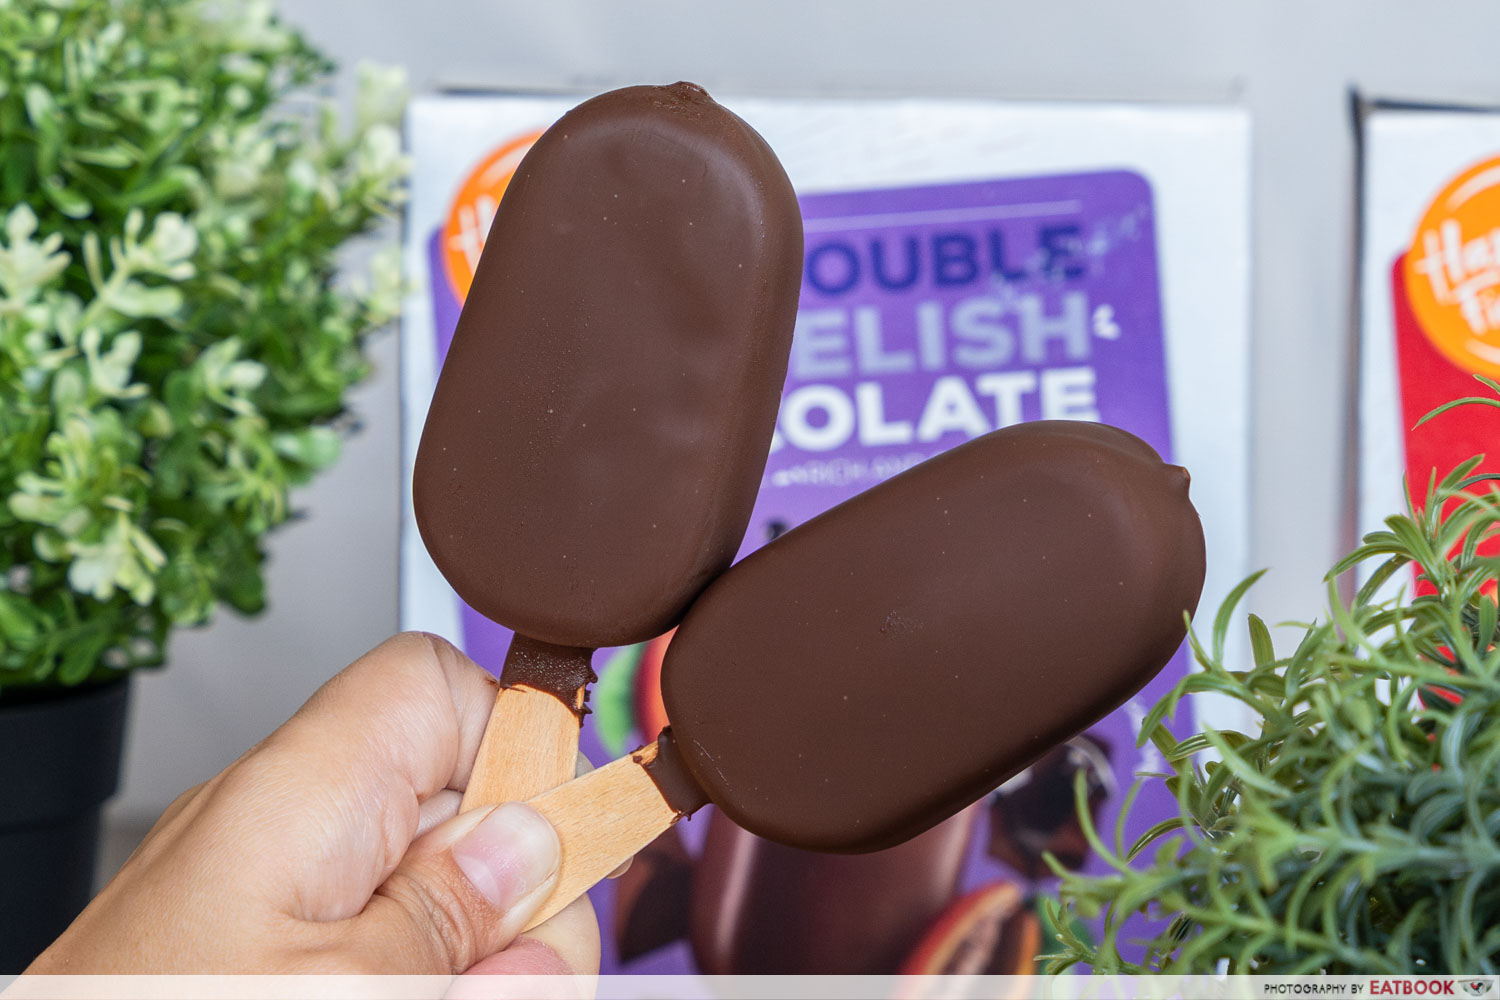 harvest fields ice cream - double delish chocolate